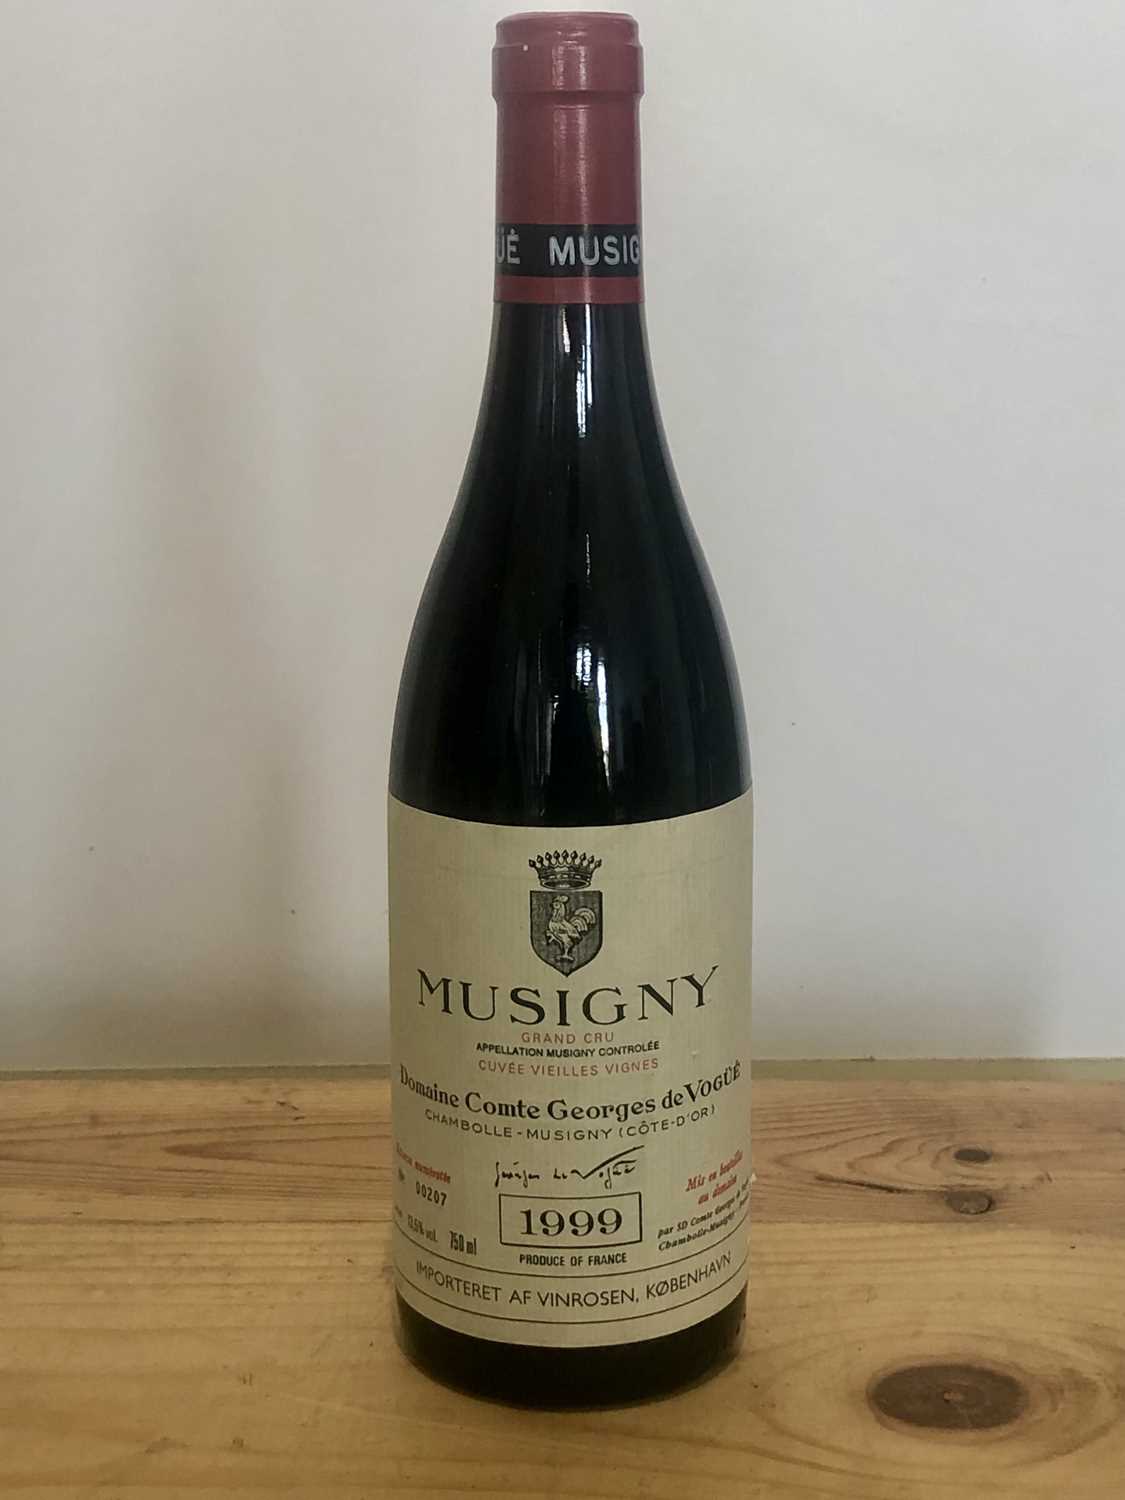 Lot 75 - 1 Bottle Grand Cru Musigny ‘Cuvee Vieilles Vignes’ Domaine Comte George de Vogue 1999